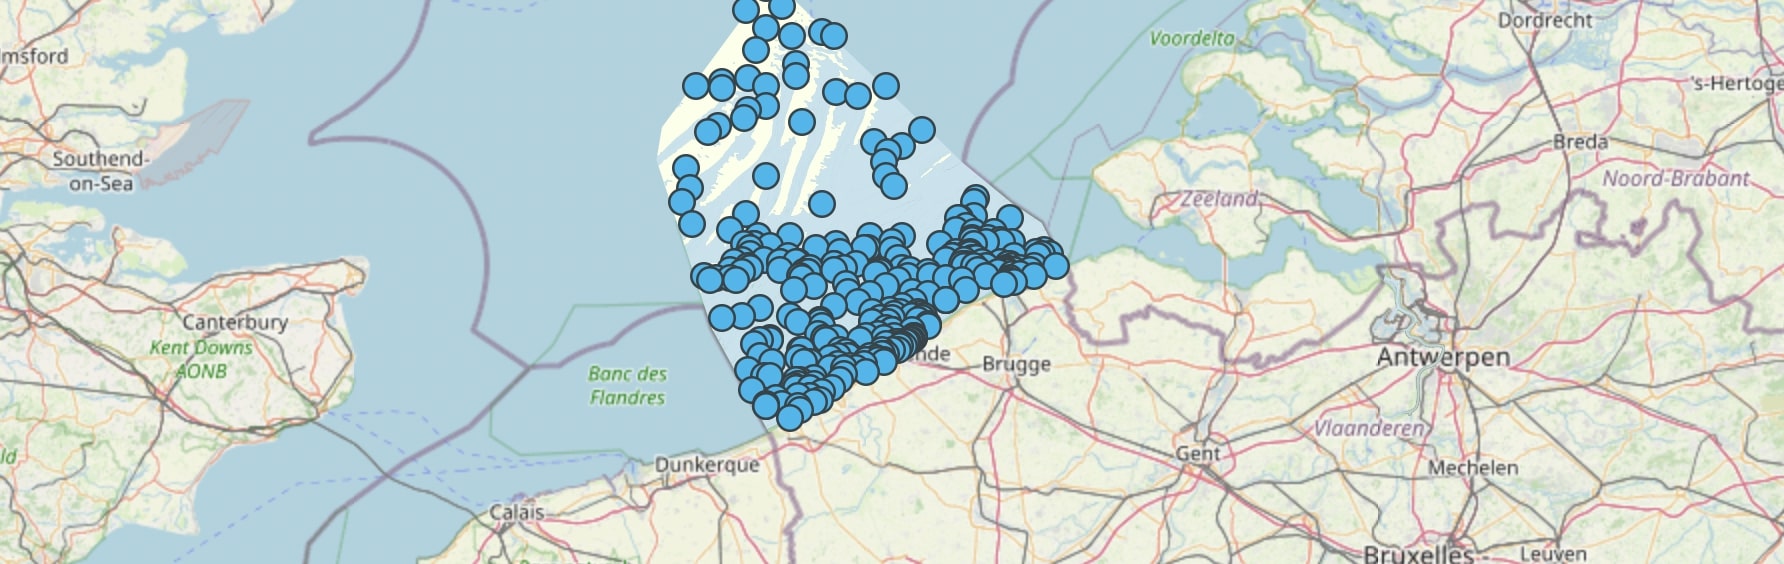 Bodem Belgische Noordzee ligt bezaaid met scheepswrakken en oorlogsvliegtuigen